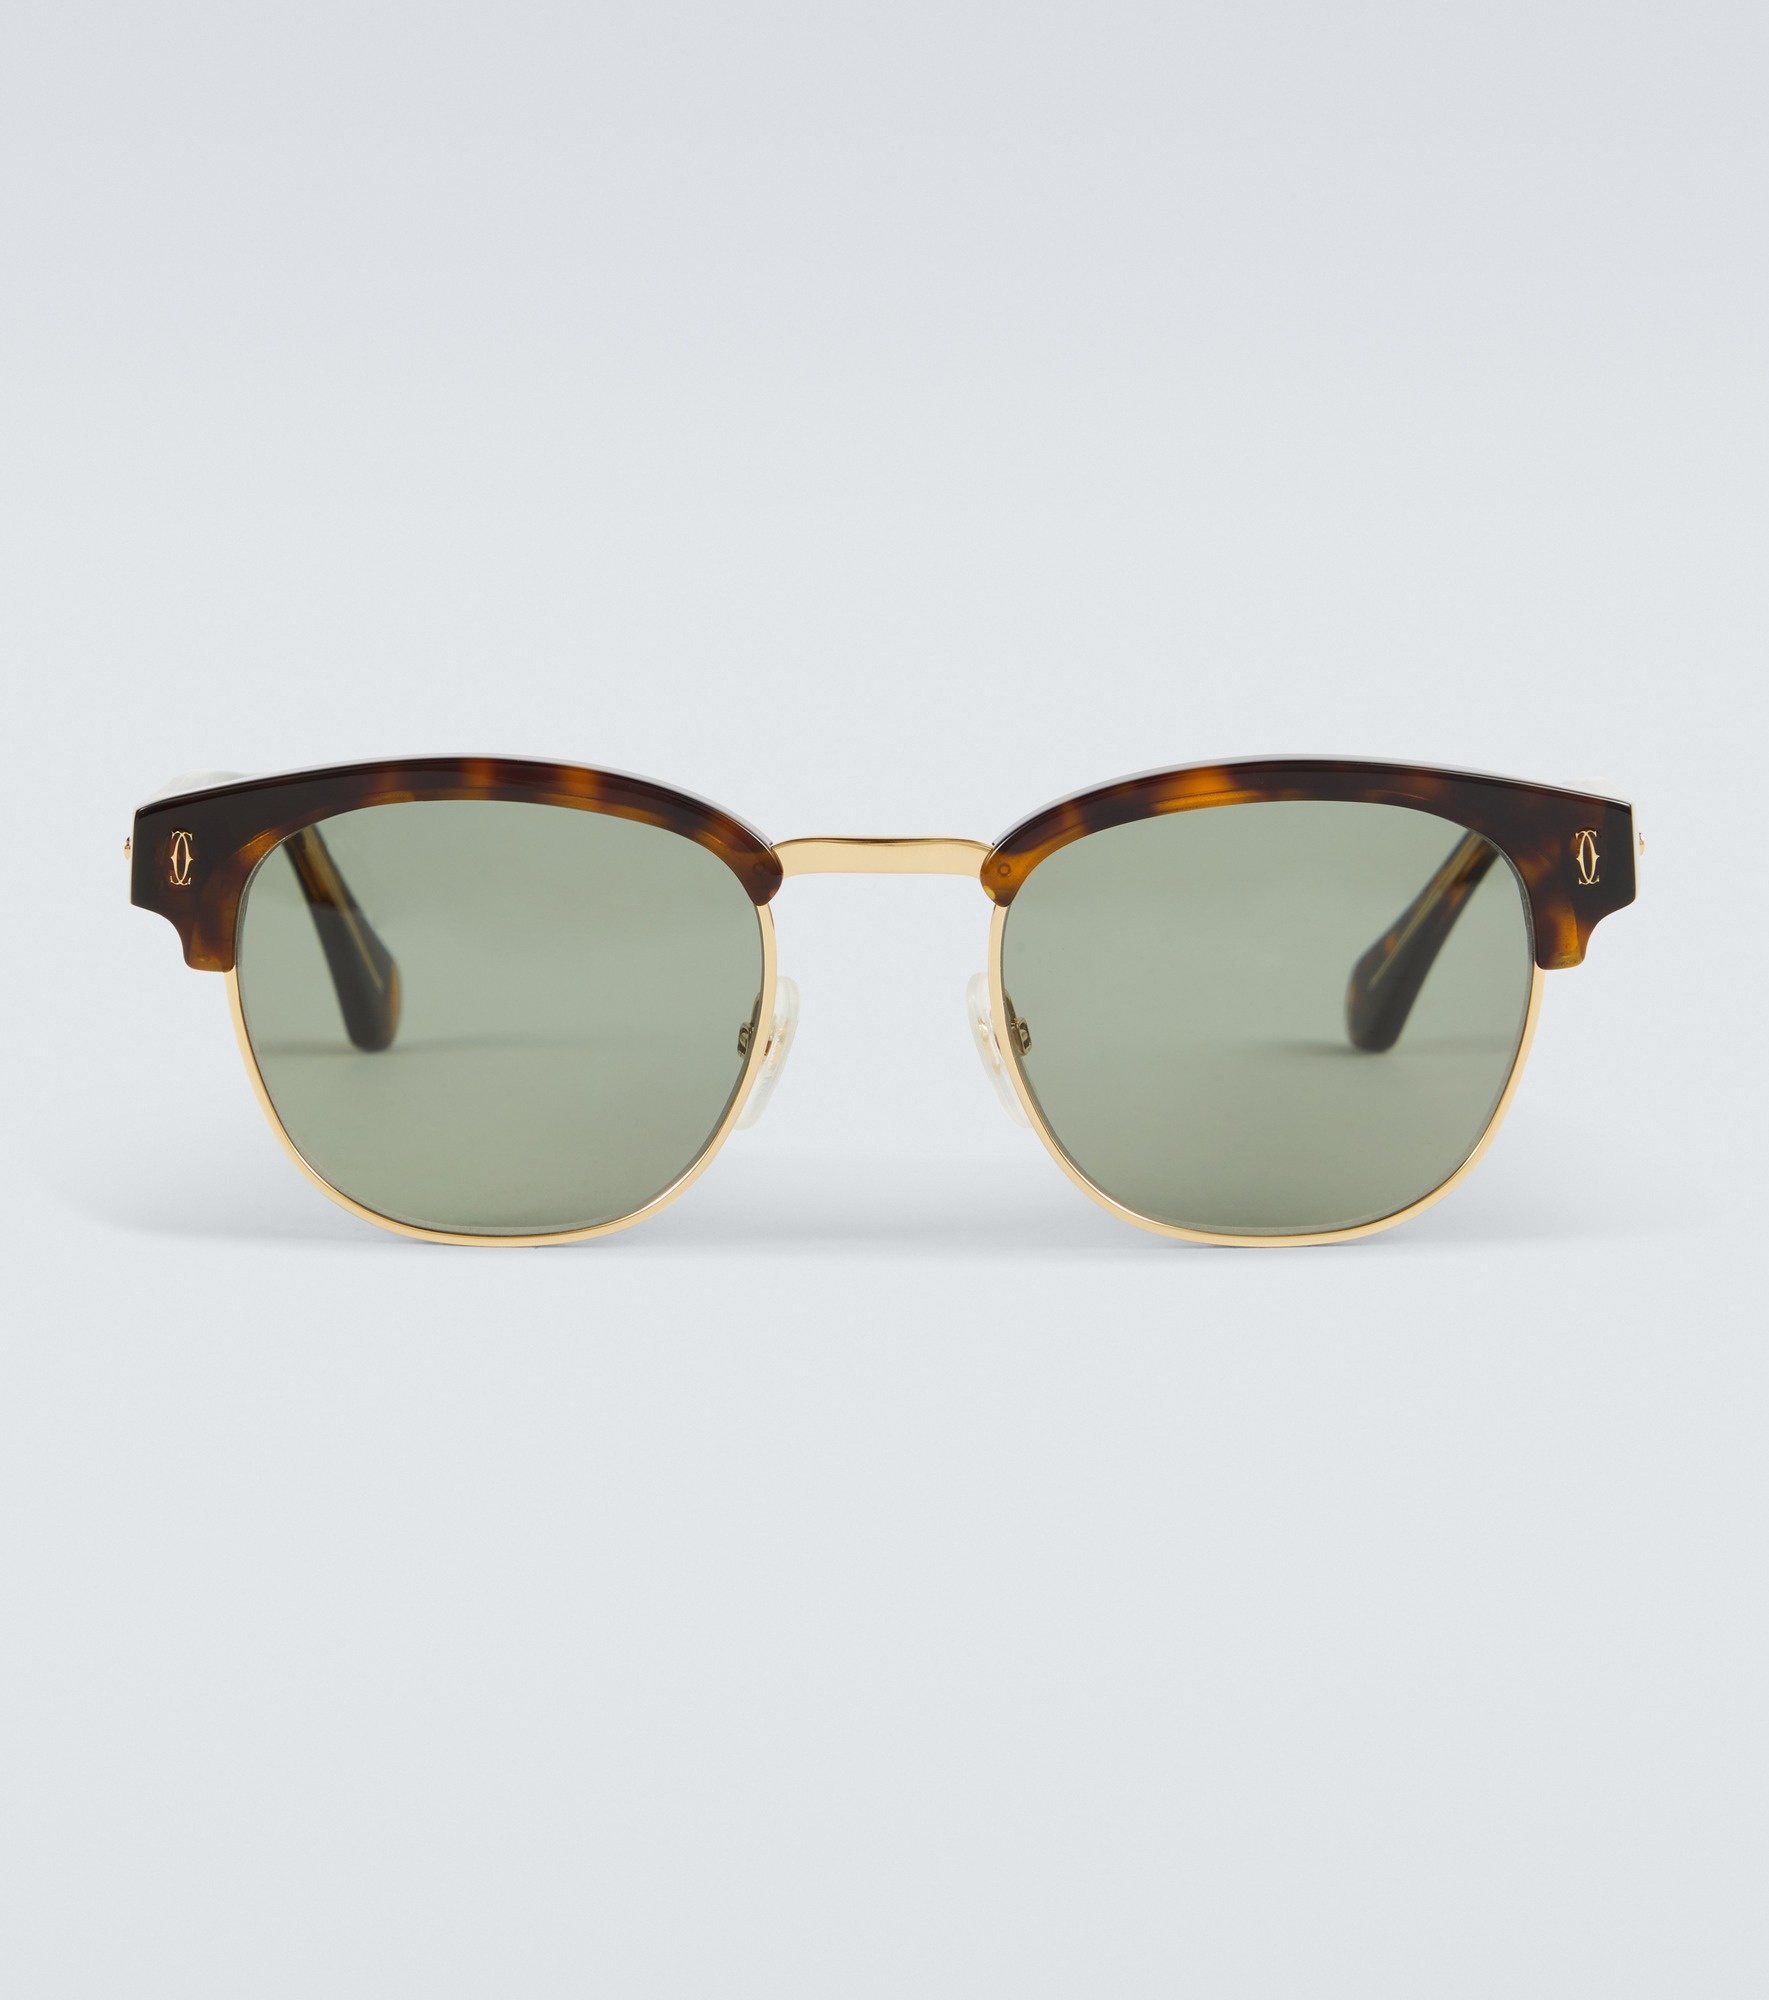 Browline sunglasses - 1